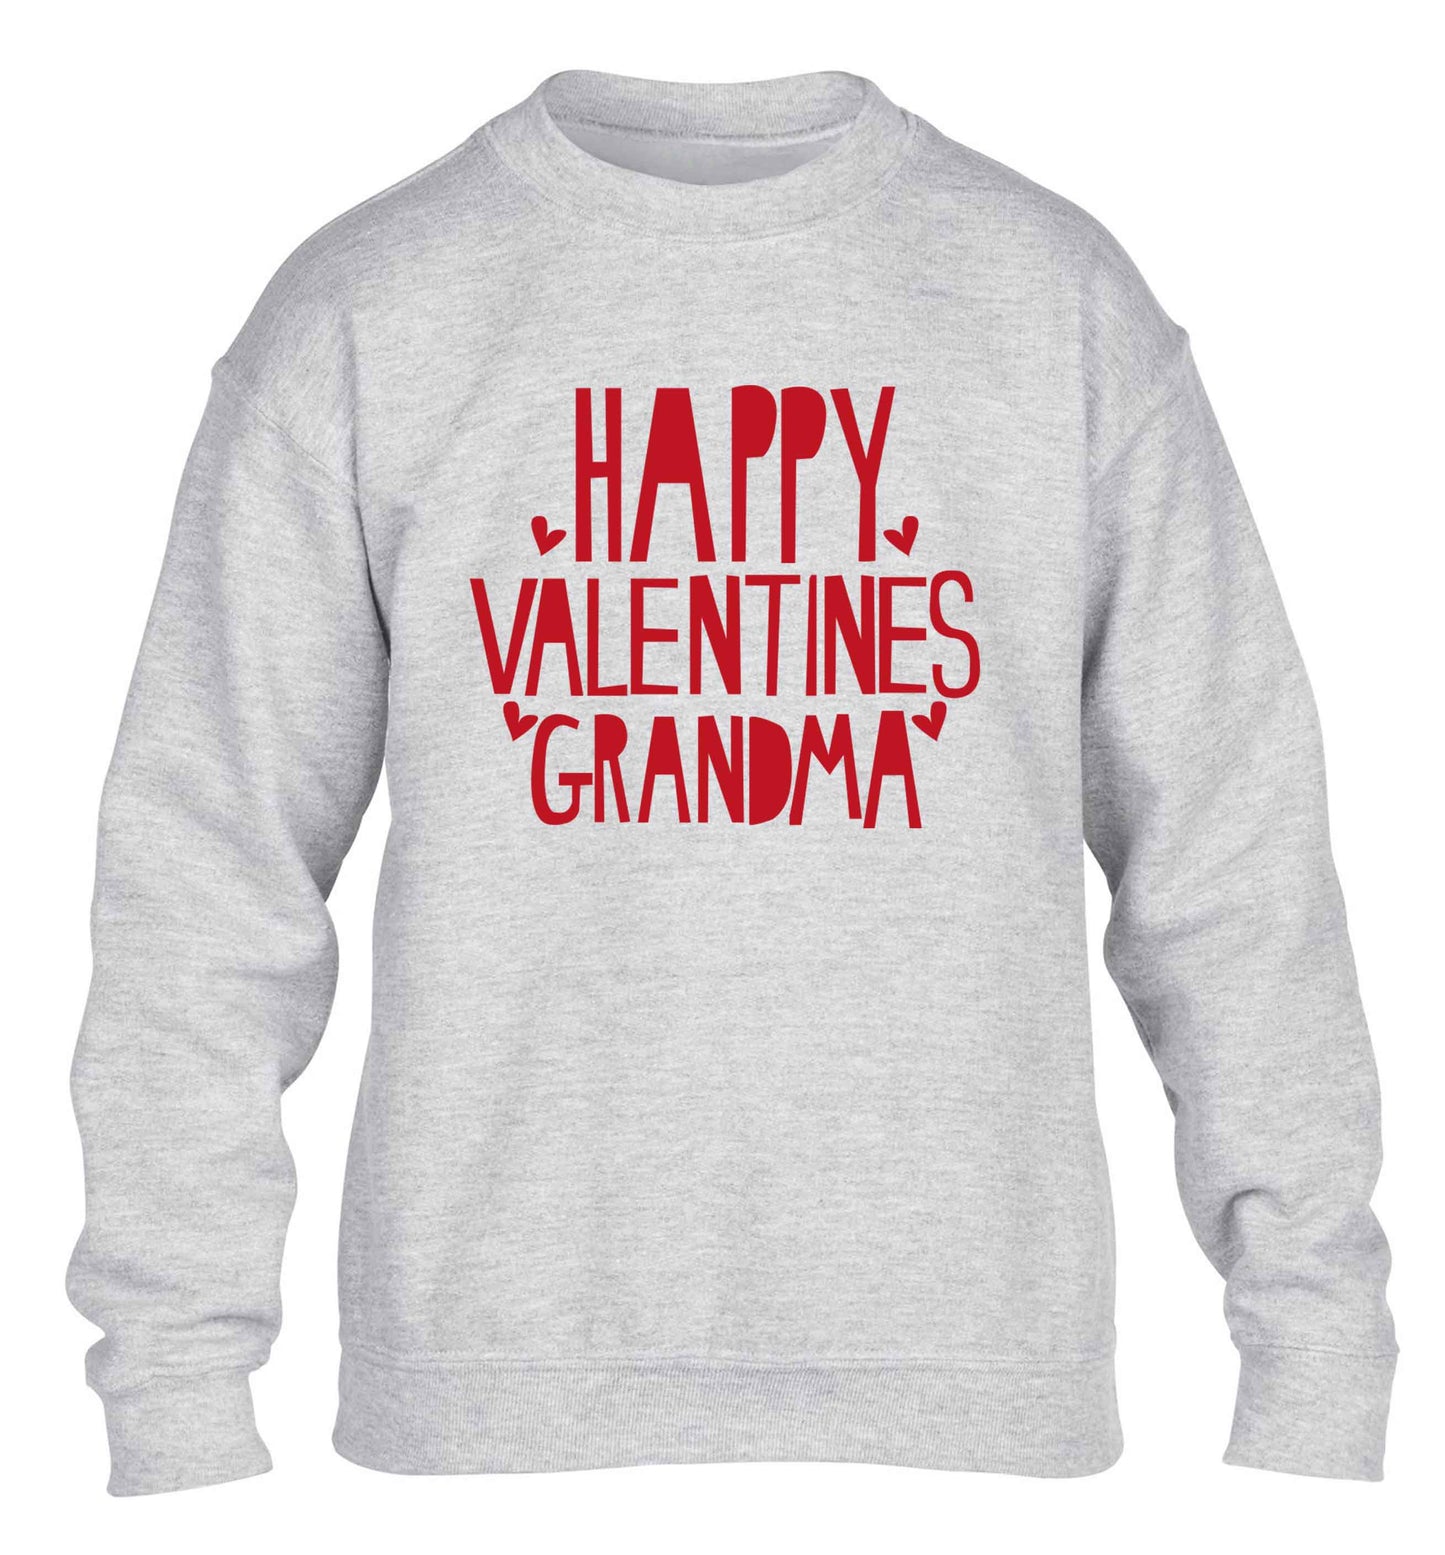 Happy valentines grandma children's grey sweater 12-13 Years